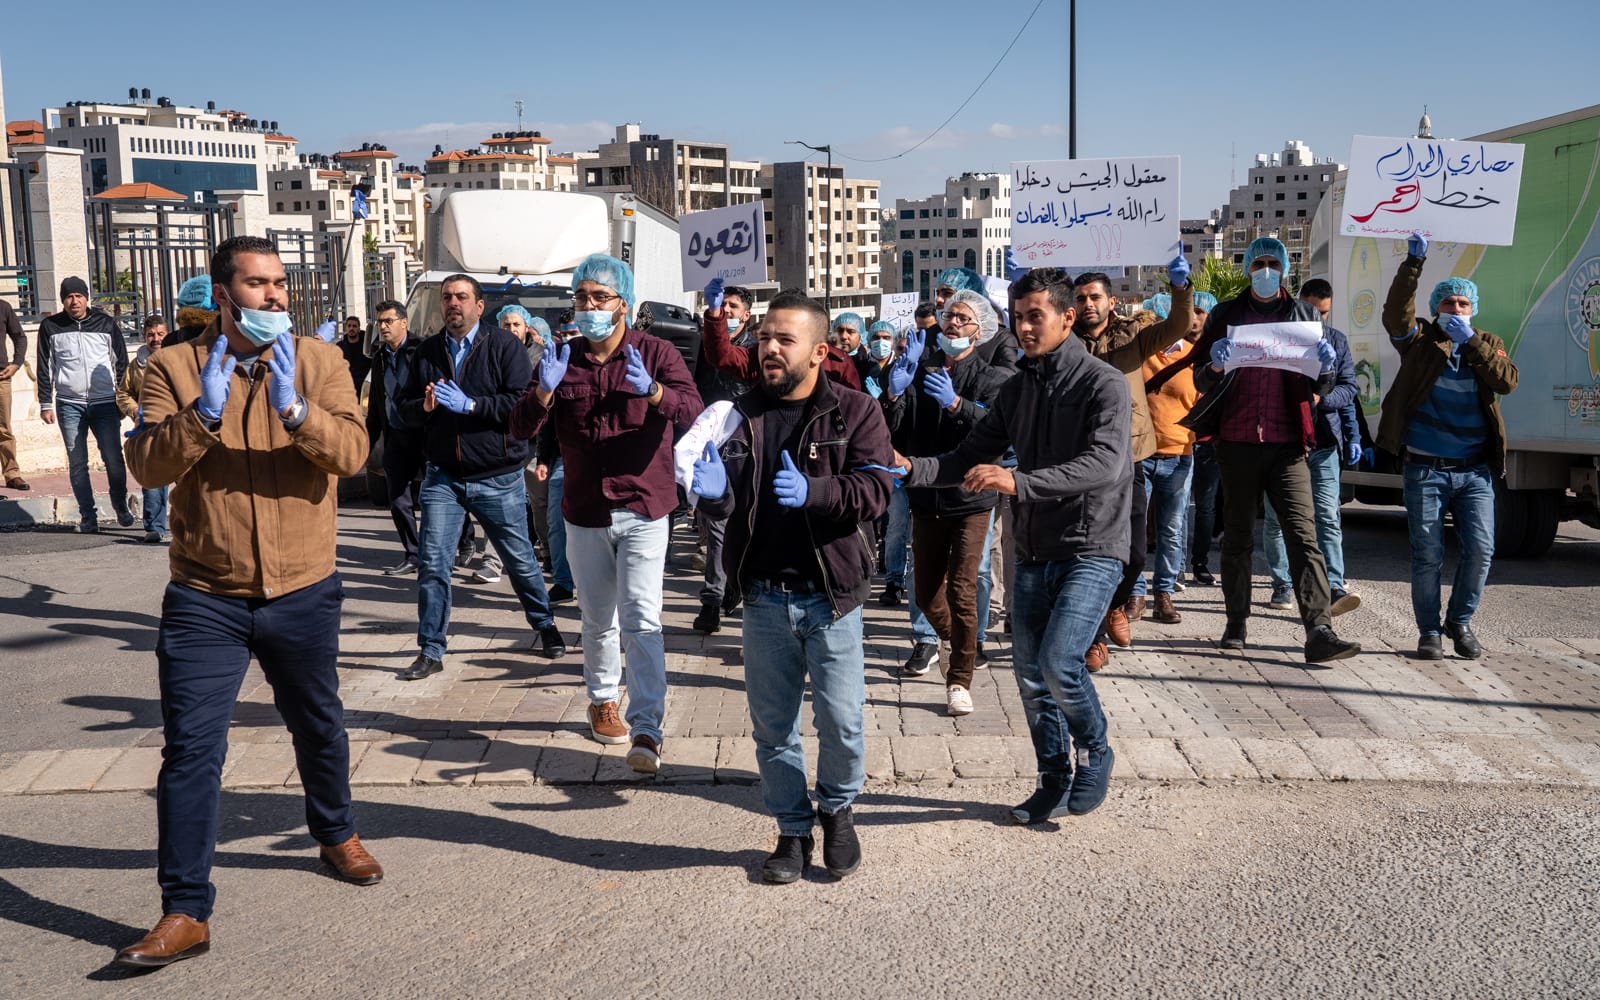 פלסטינים מפגינים נגד העלאת מיסים הממשלתית ברמאללה, 12 בדצמבר 2018 (צילום: לוק טרס)